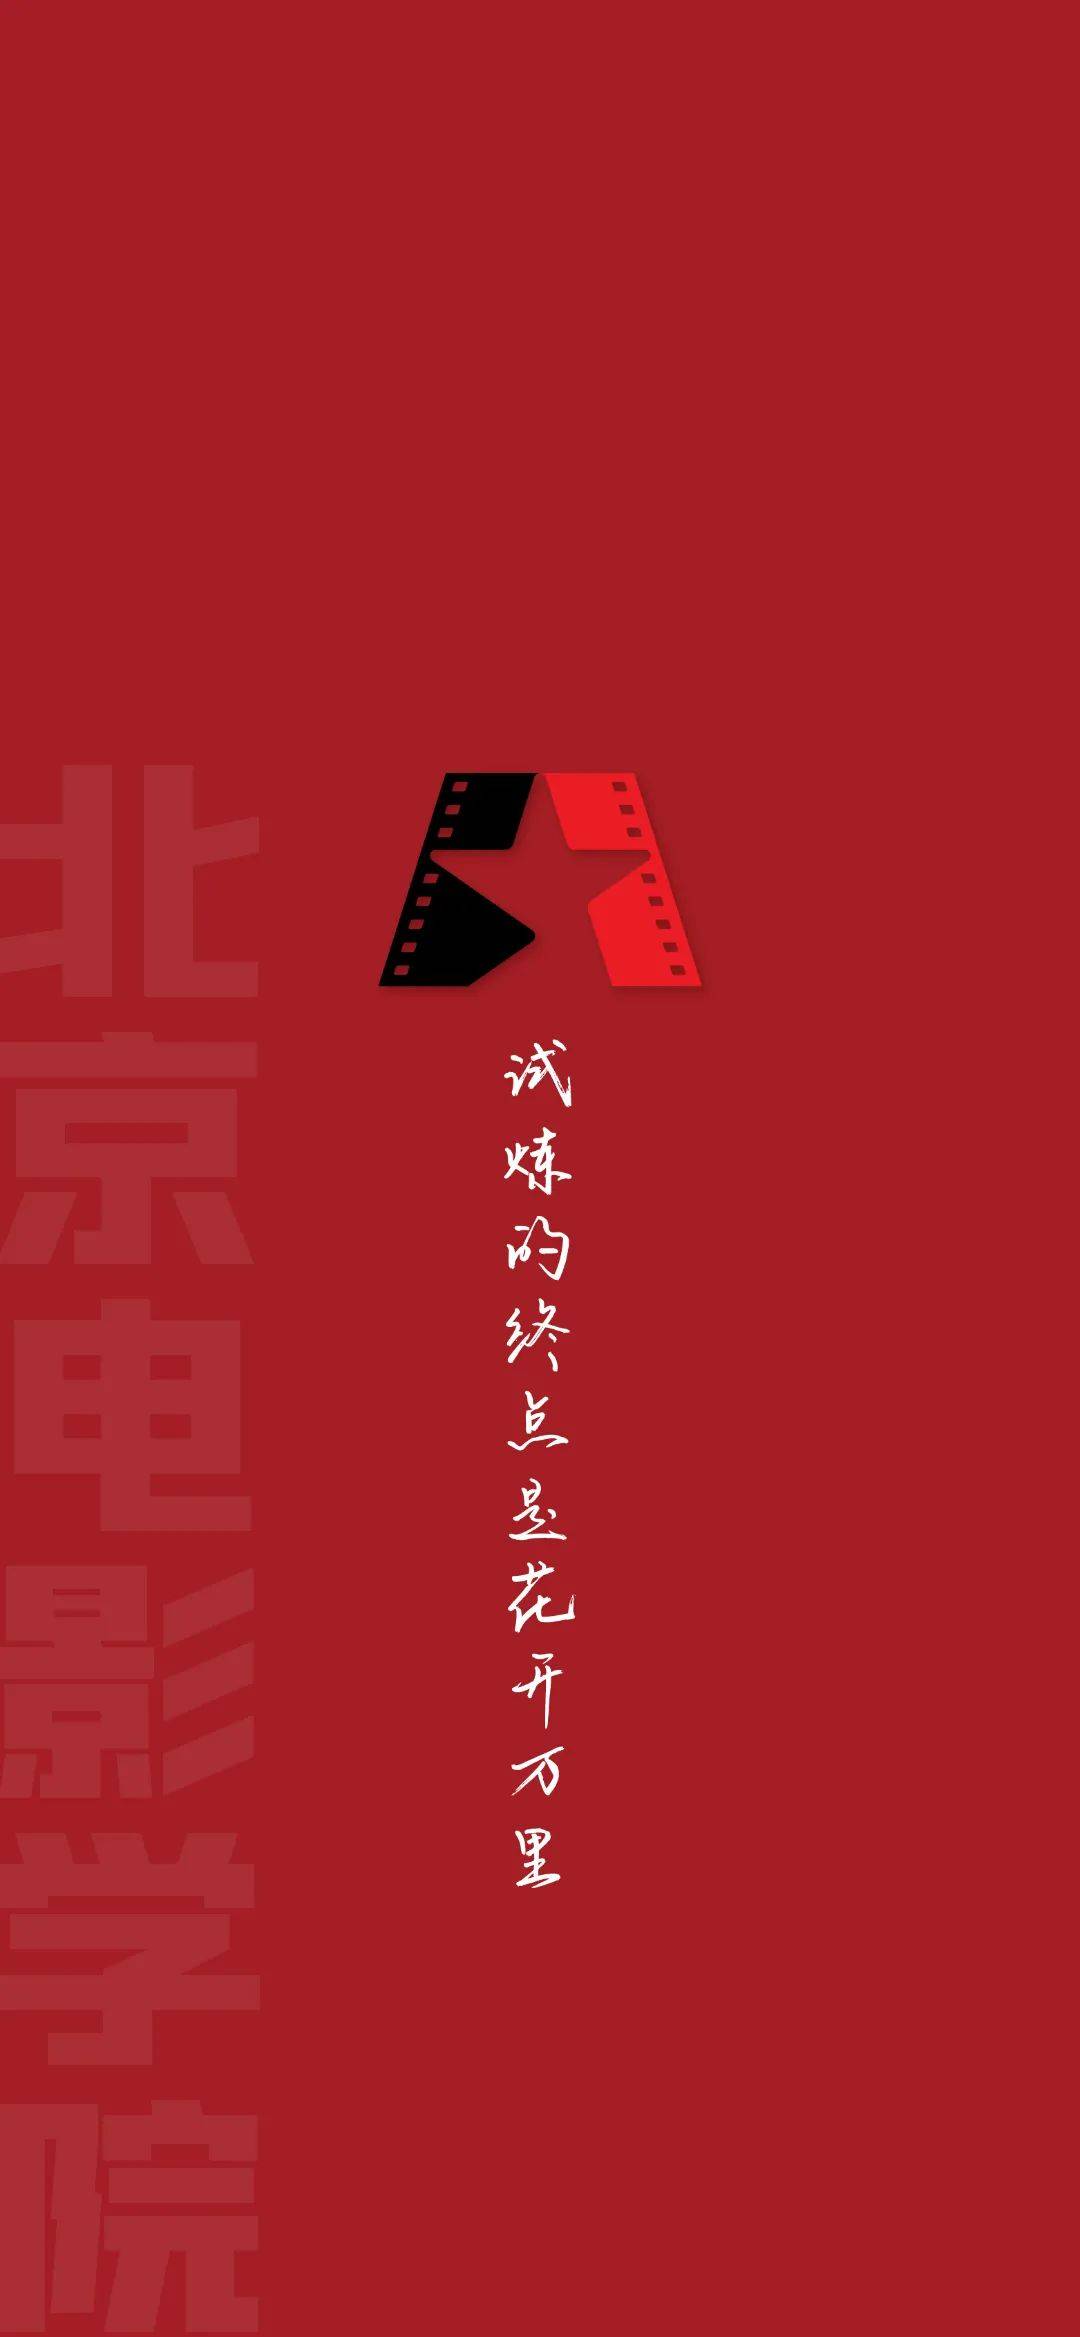 北京电影学院手机壁纸图片